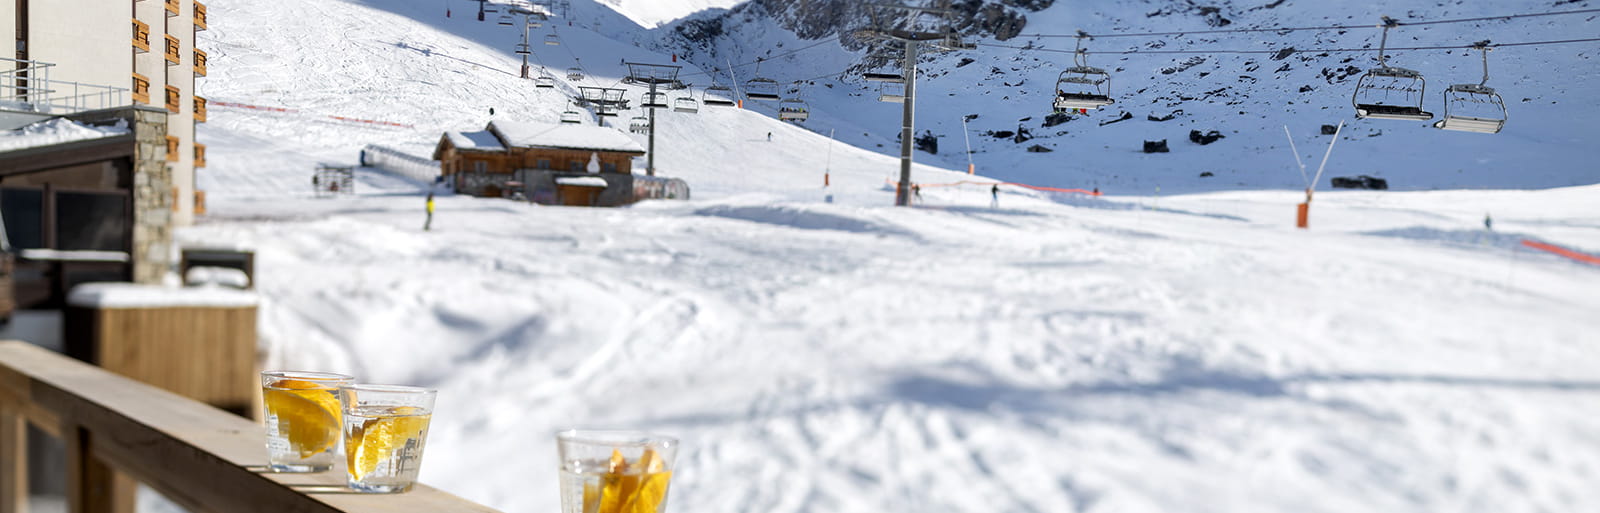 Ynycio Tignes Val Claret - Vue piste de ski